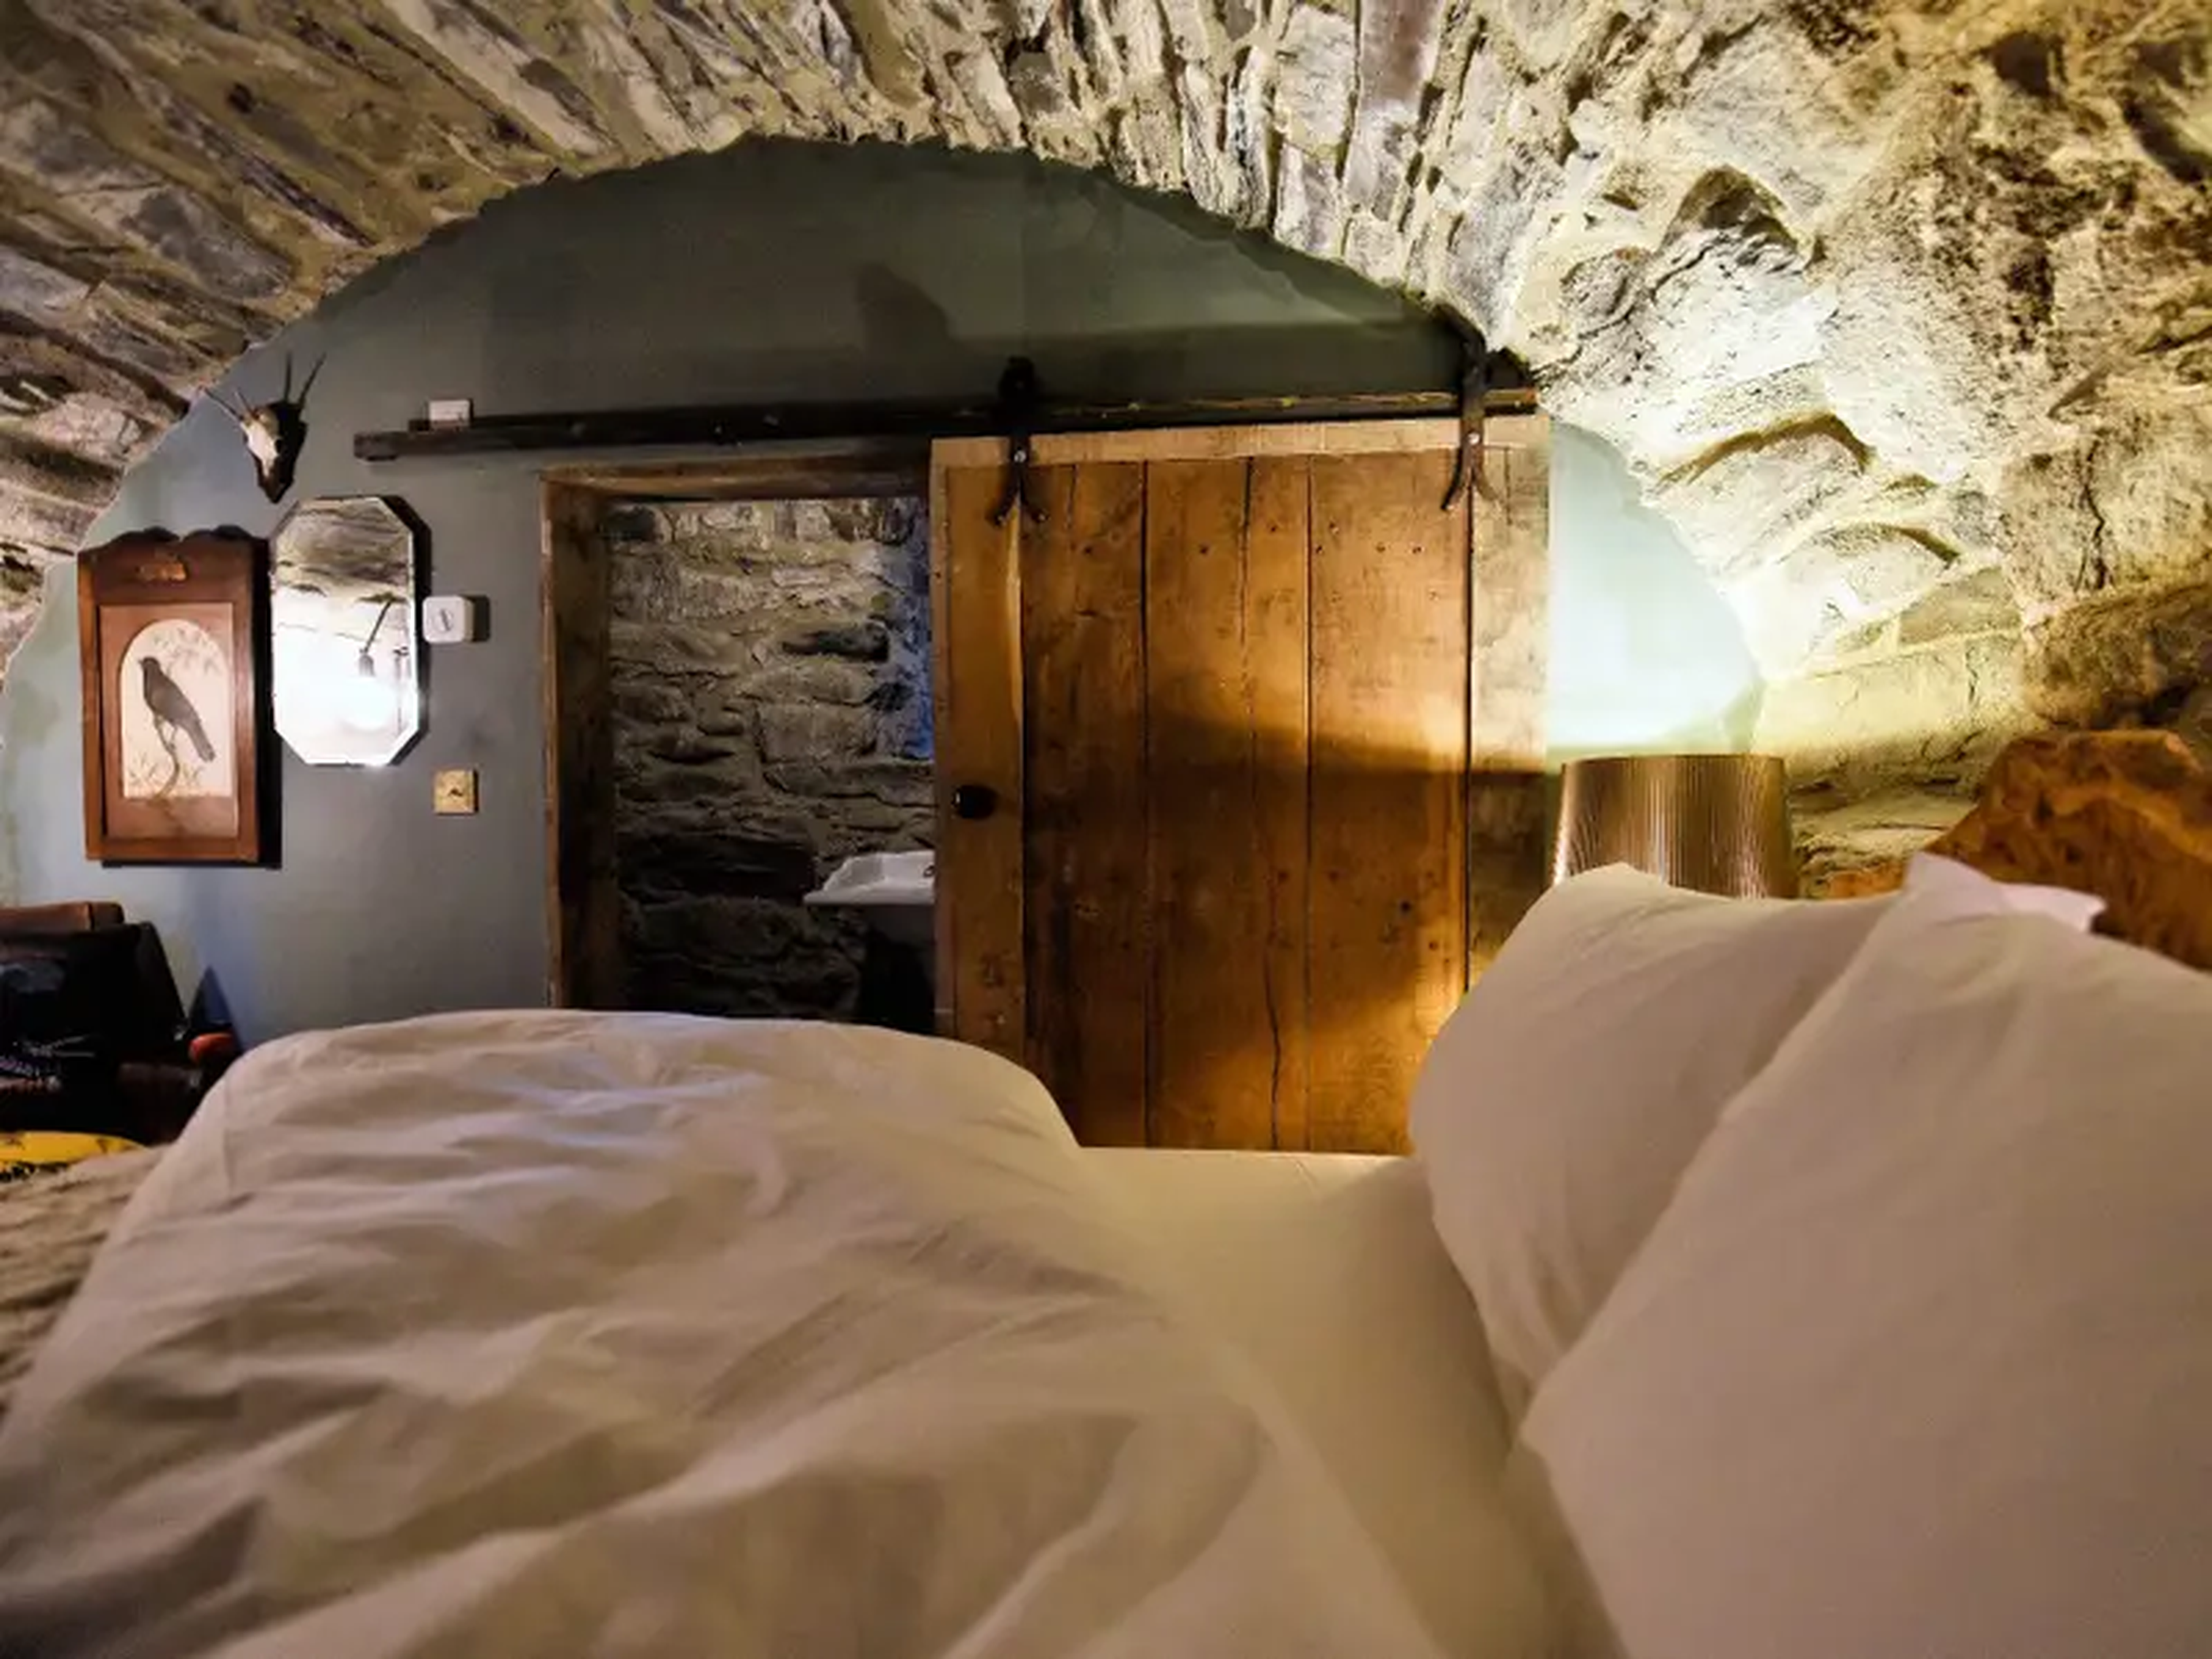 Una de las habitaciones del castillo de Kilmartin, donde la cama está bajo un techo de piedra vista con doble bóveda que sigue en pie desde 1550.